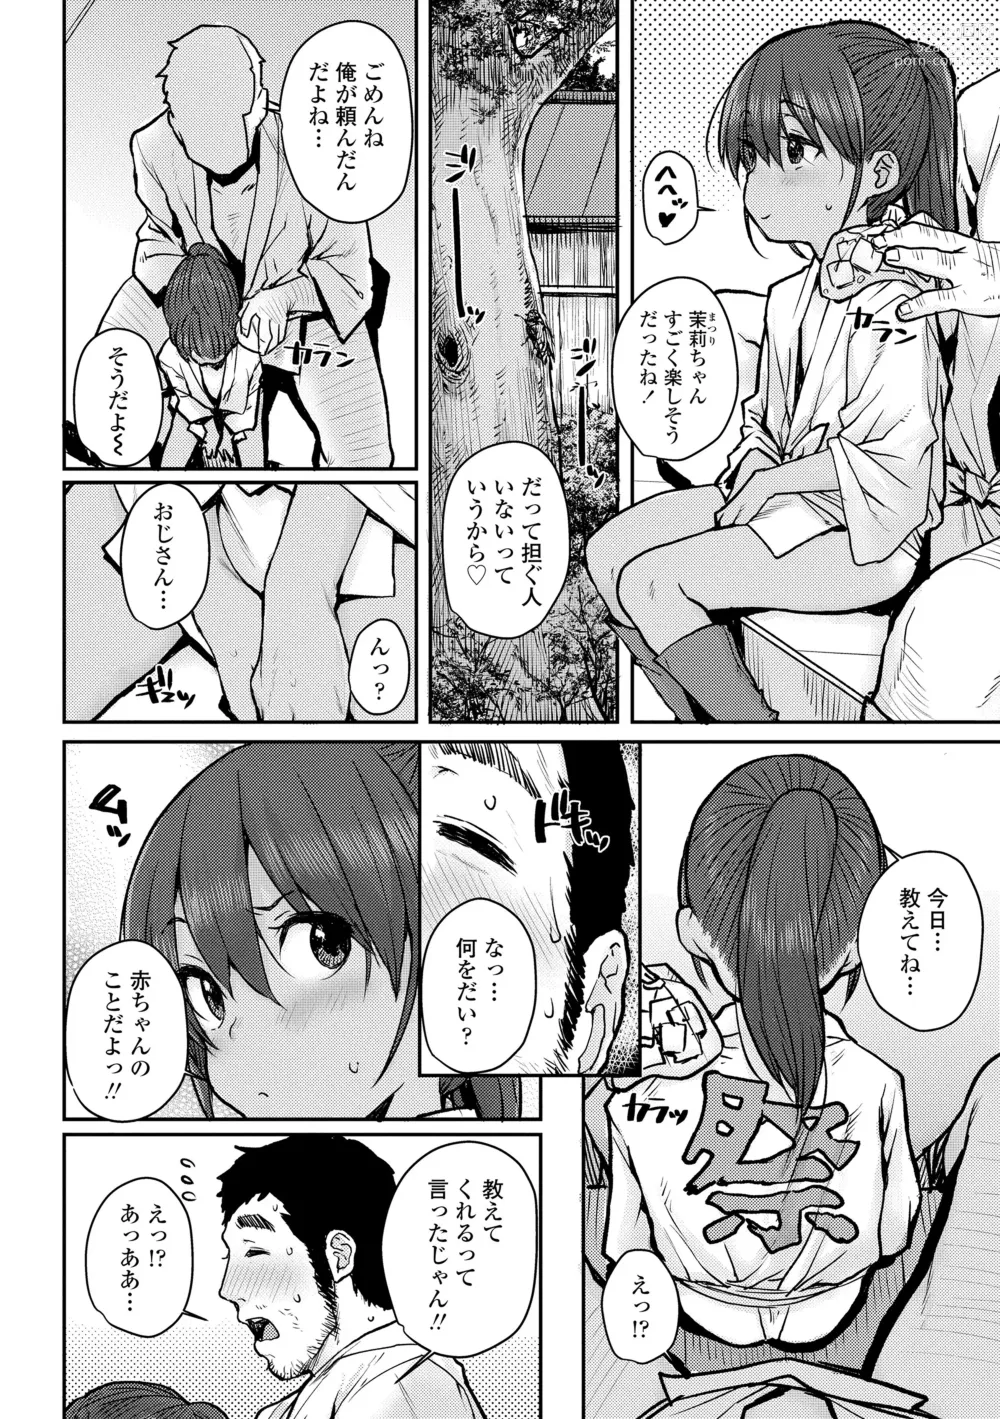 Page 8 of manga Love Love Dakko Shiyo - Love Love hug me